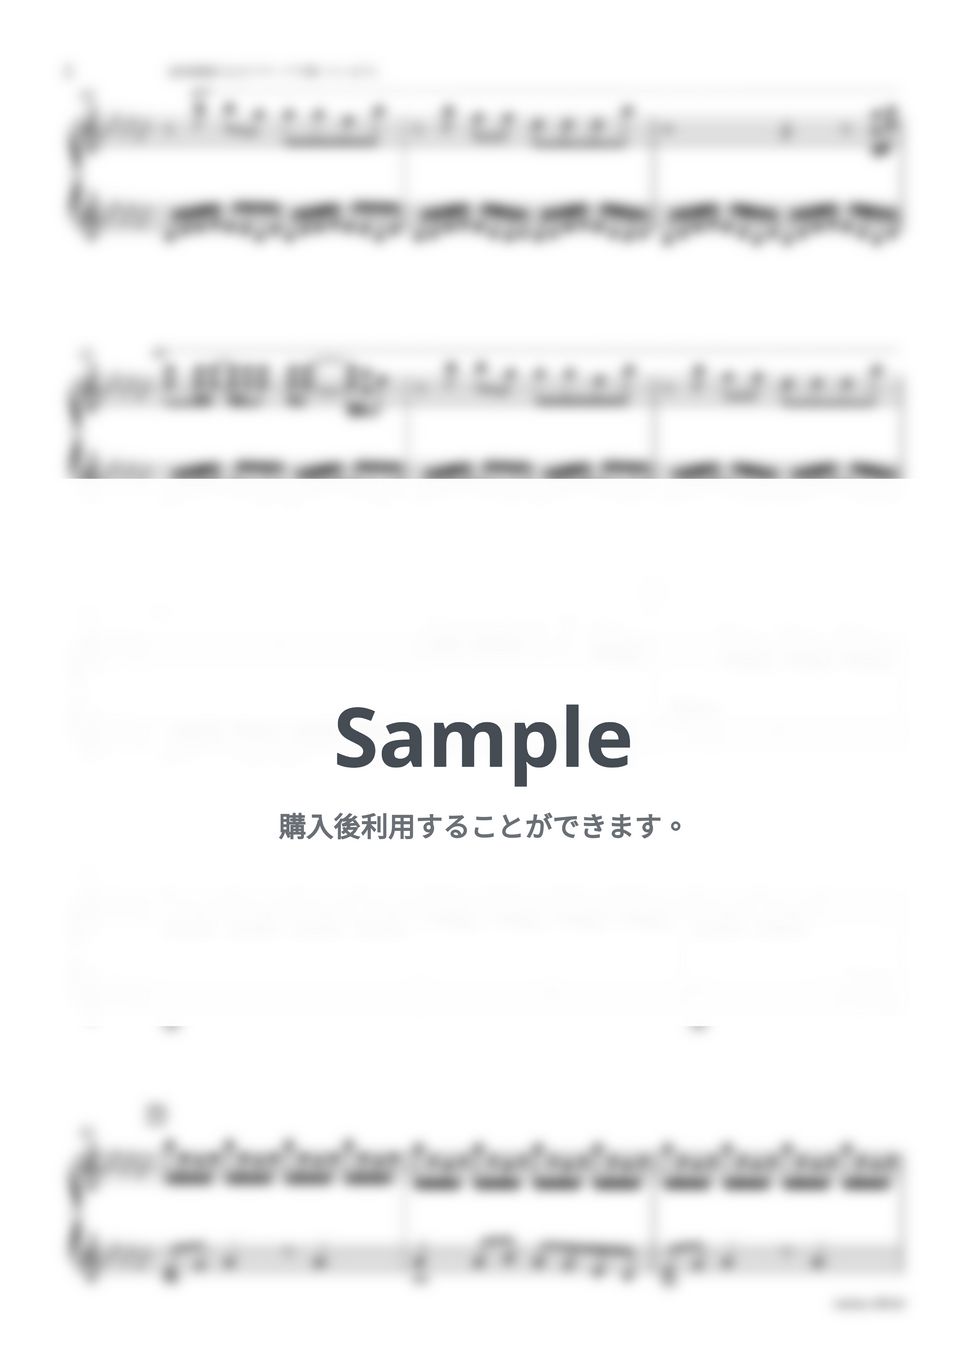 宇多田ヒカル - 君に夢中 -Piano Version- by sammy